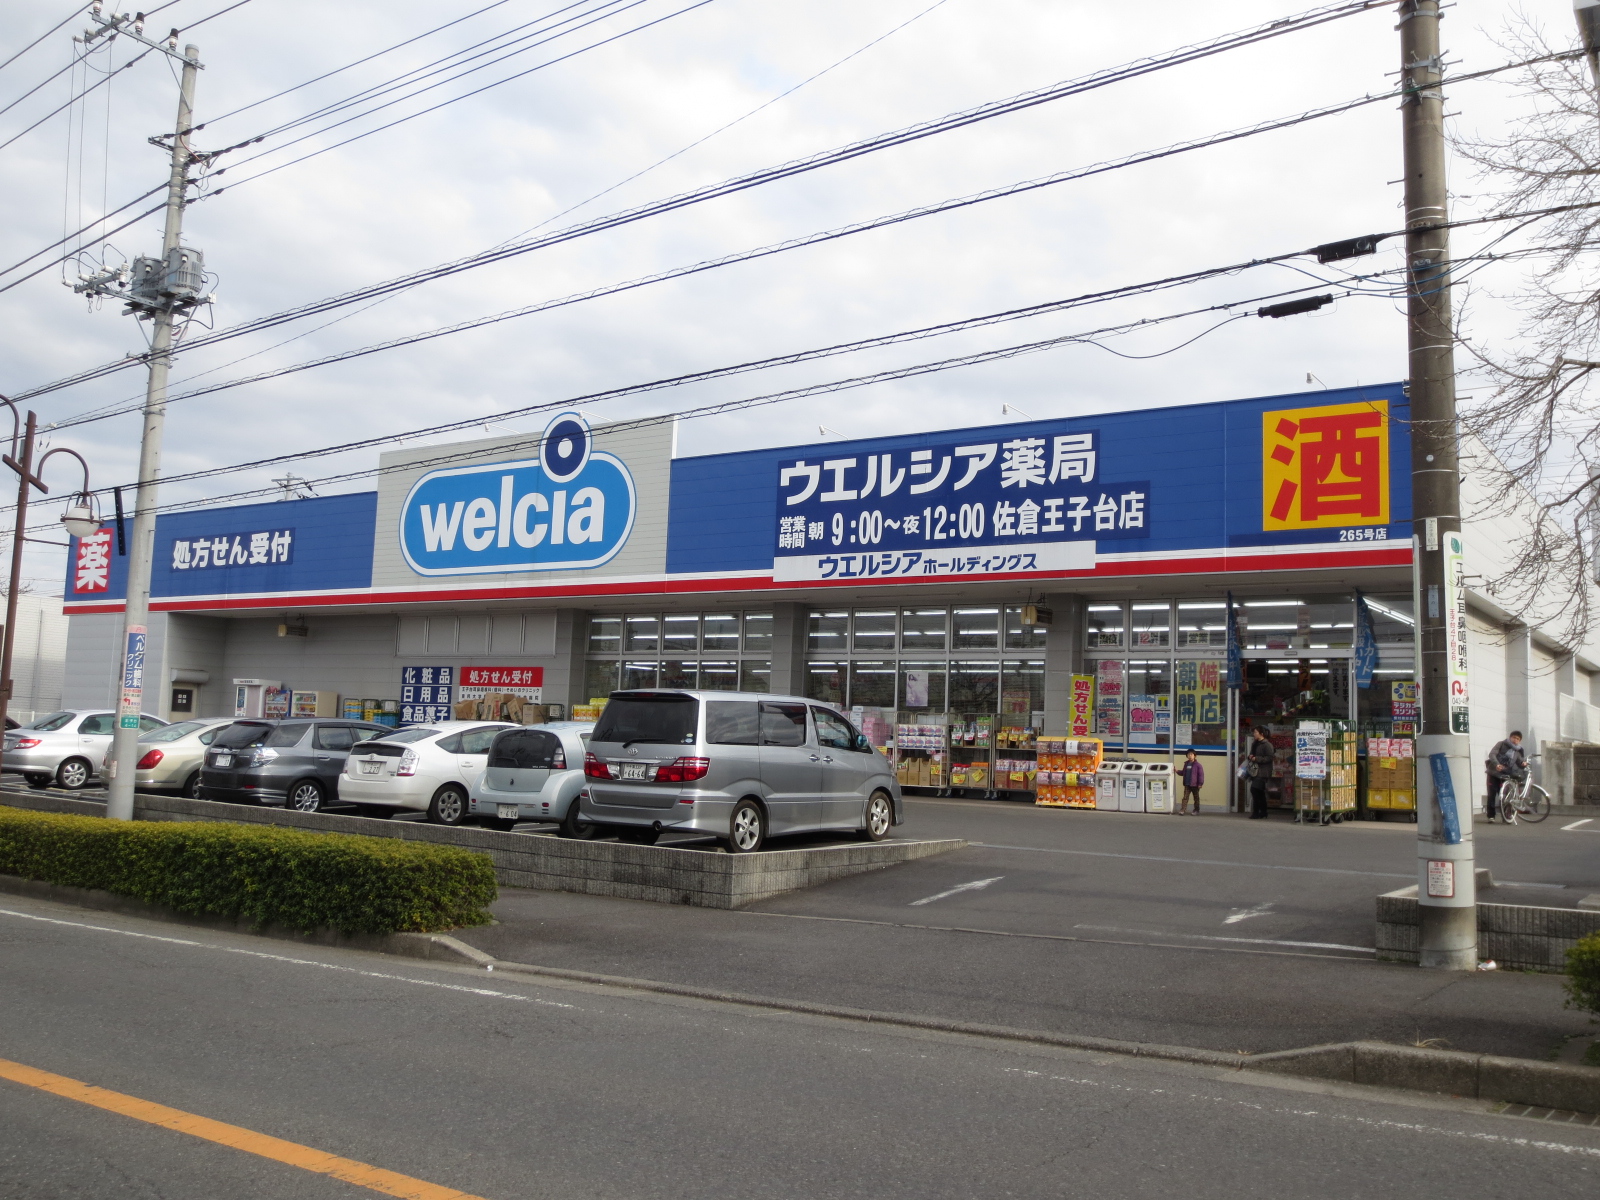 Dorakkusutoa. Uerushia Sakura Ojidai shop 610m until (drugstore)